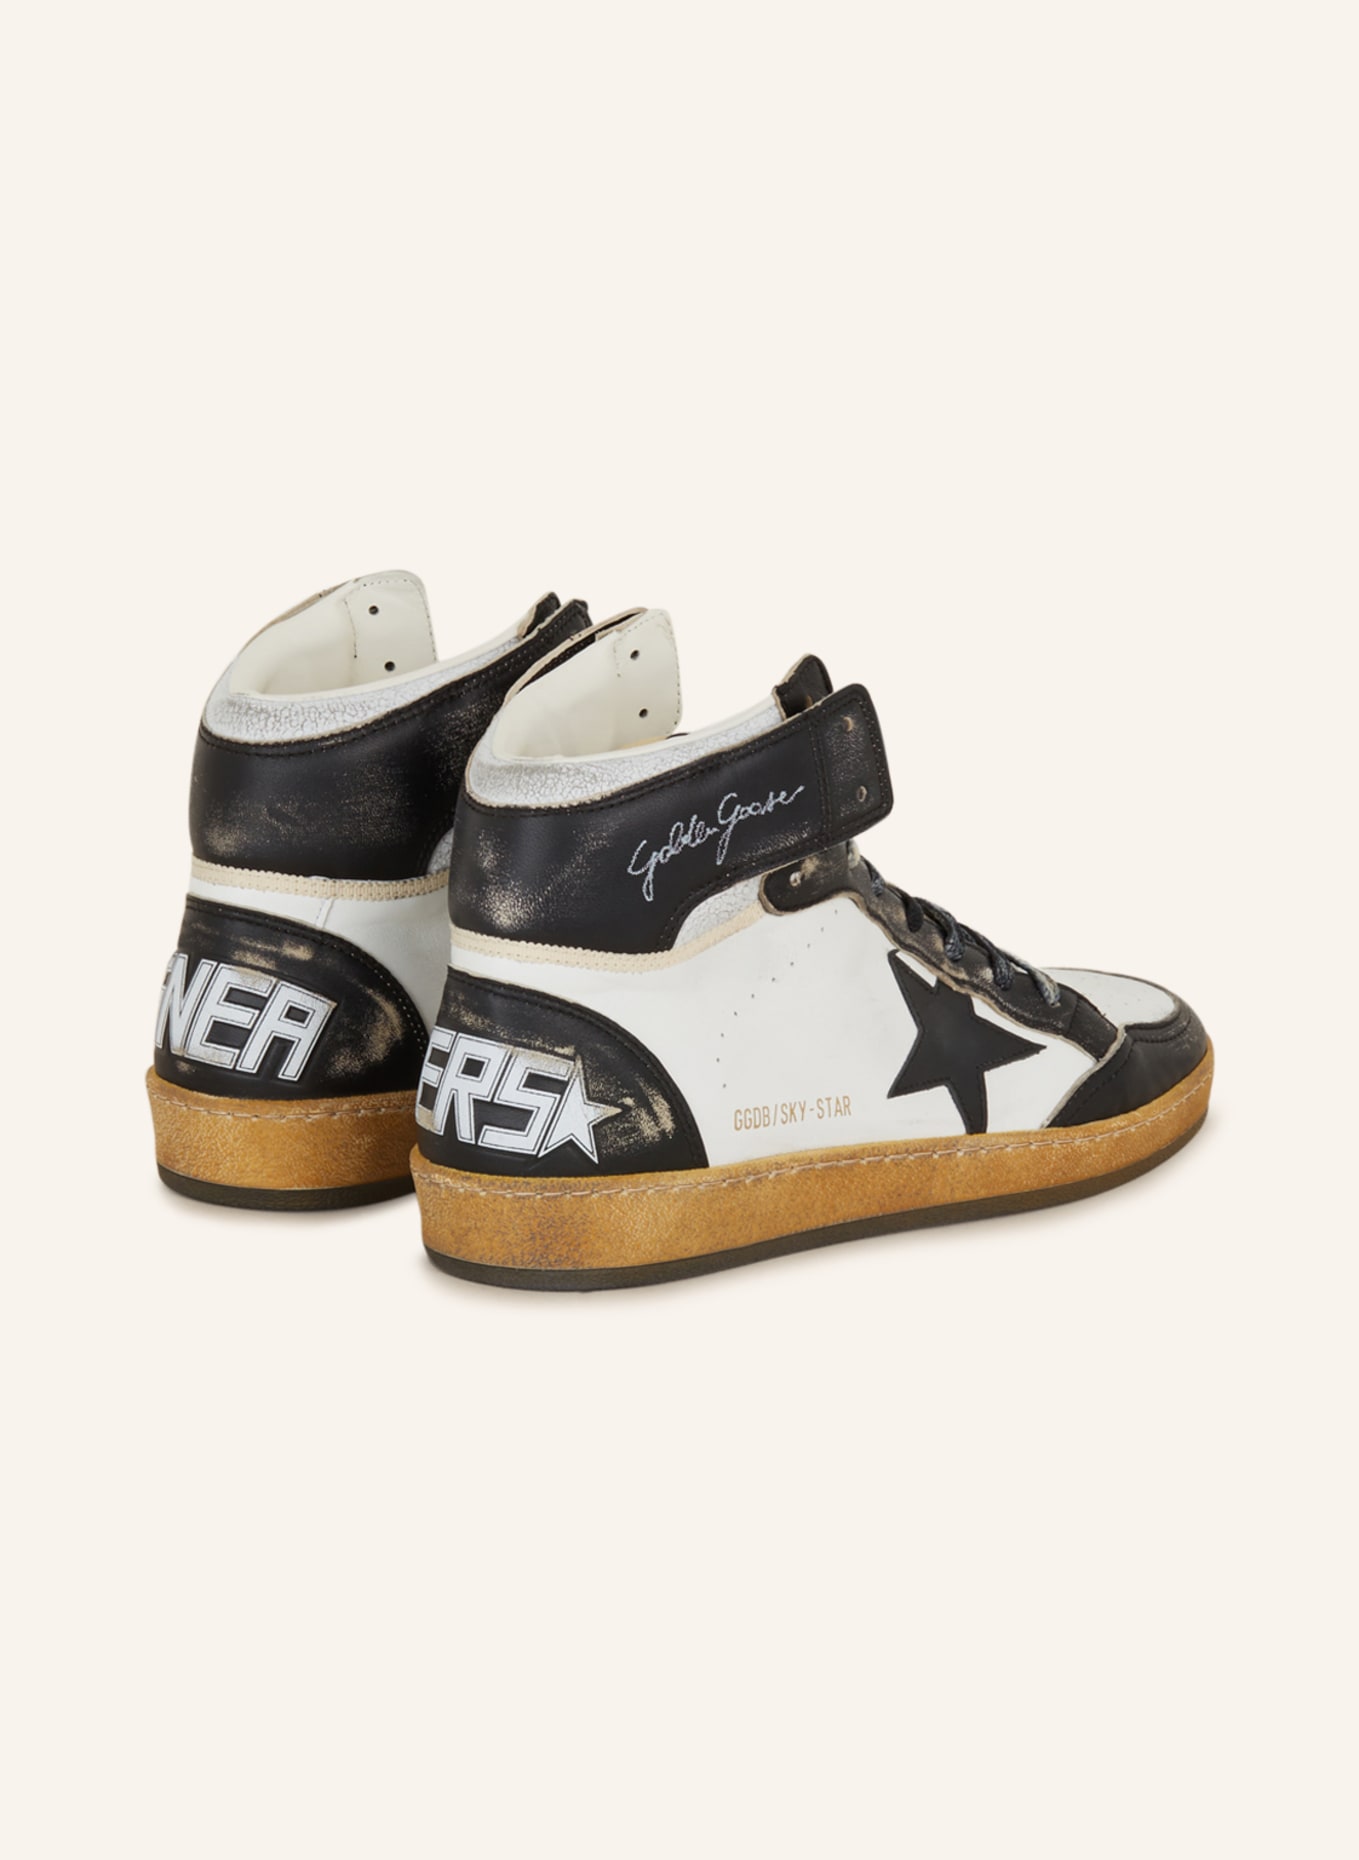 GOLDEN GOOSE Hightop-Sneaker SKY STAR, Farbe: WEISS/ SCHWARZ (Bild 2)